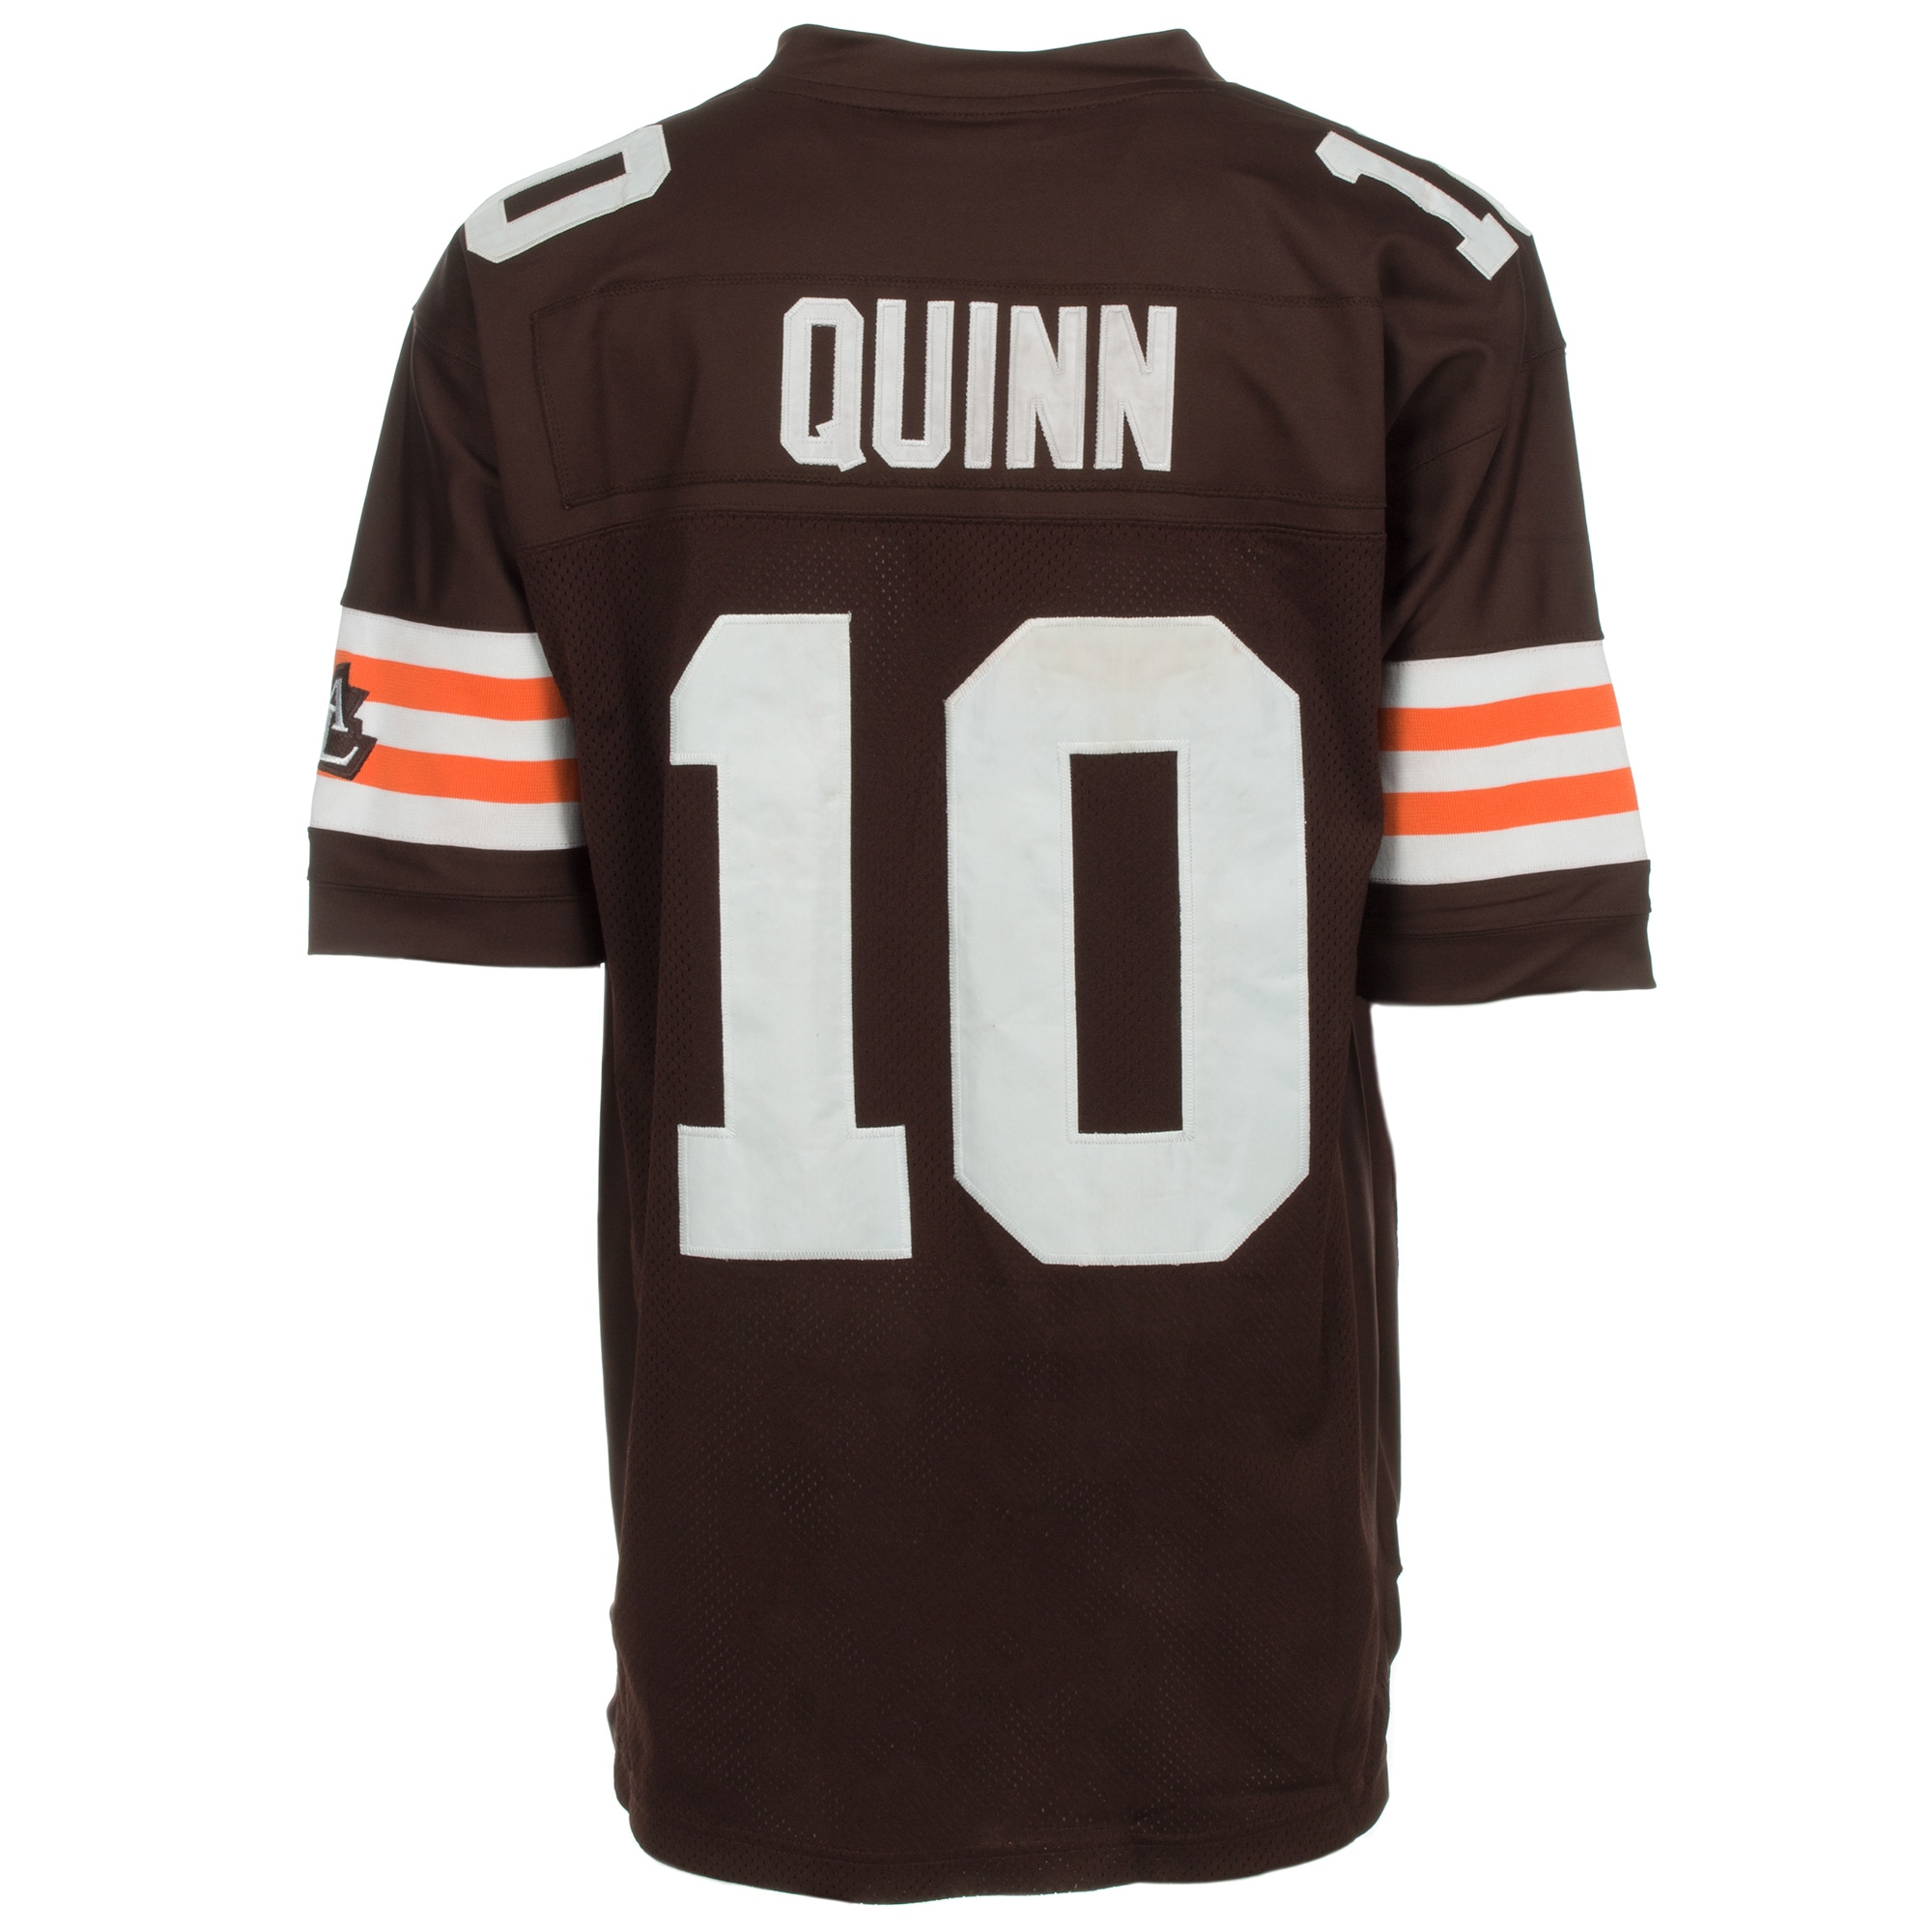 Cheap MLB Jerseys, Brady Quinn Jersey, #10 Cleveland Browns…